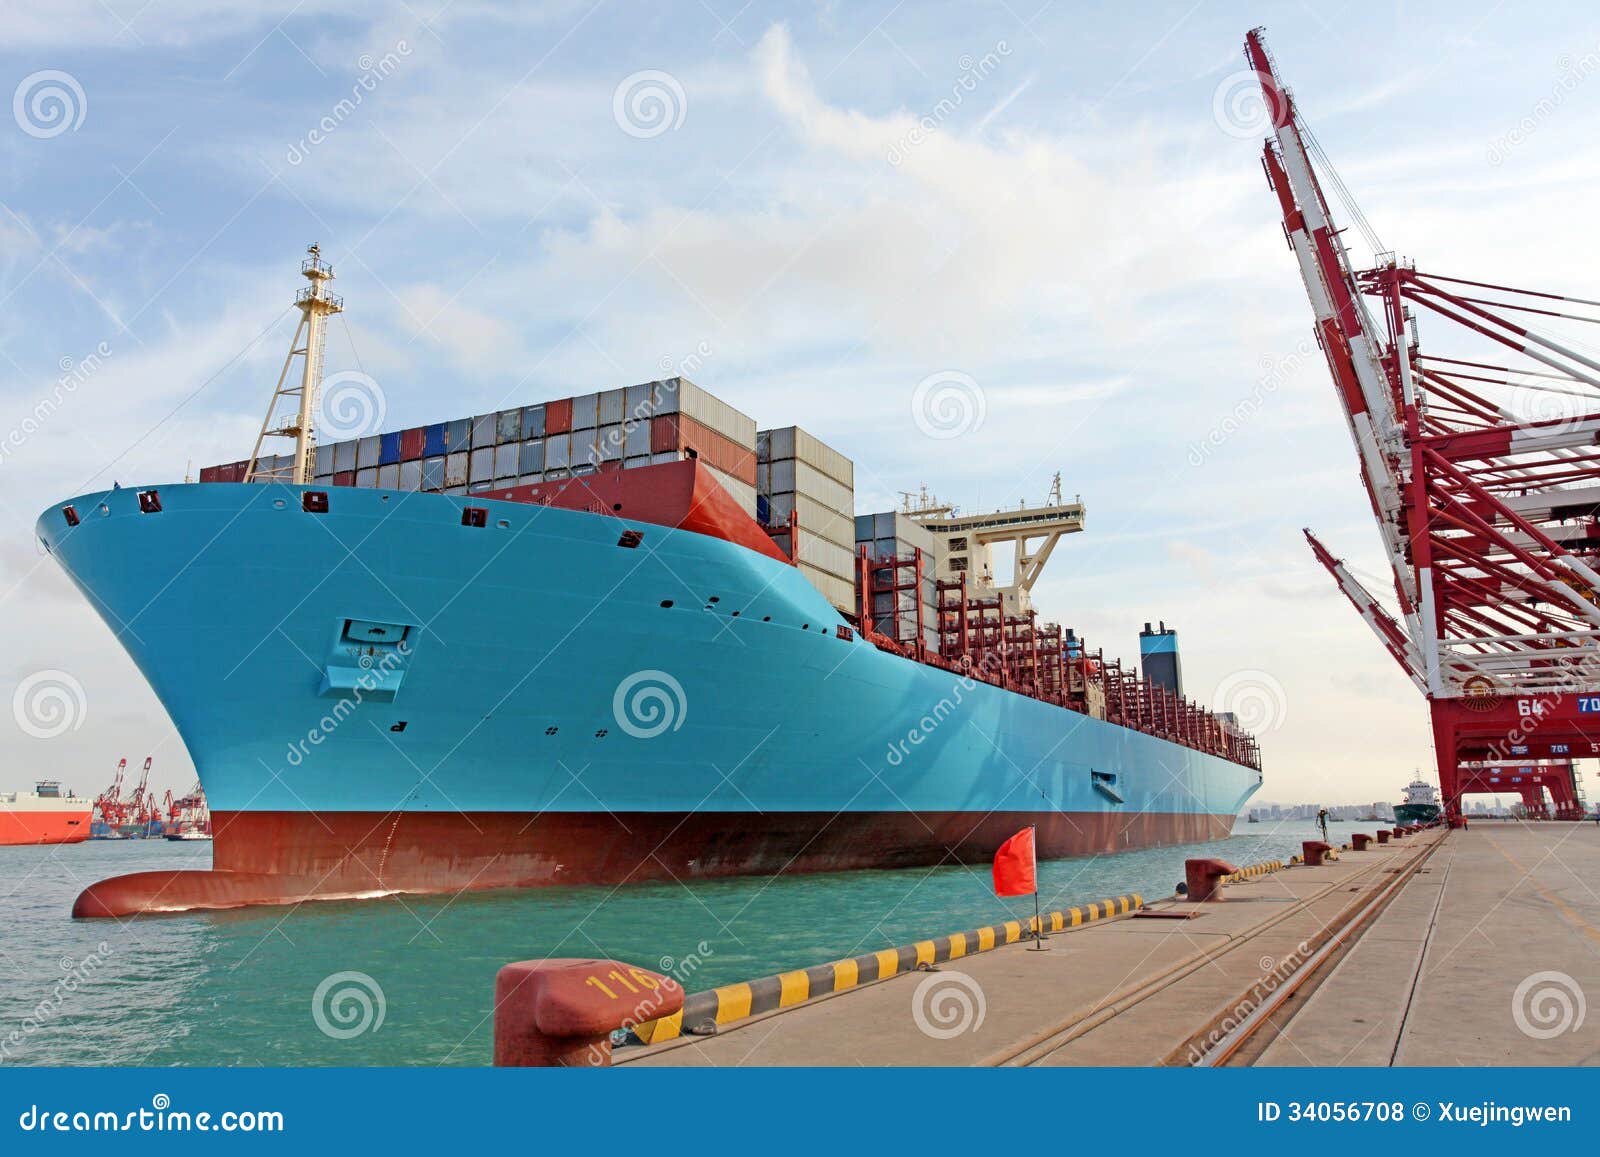 qingdao port container terminal